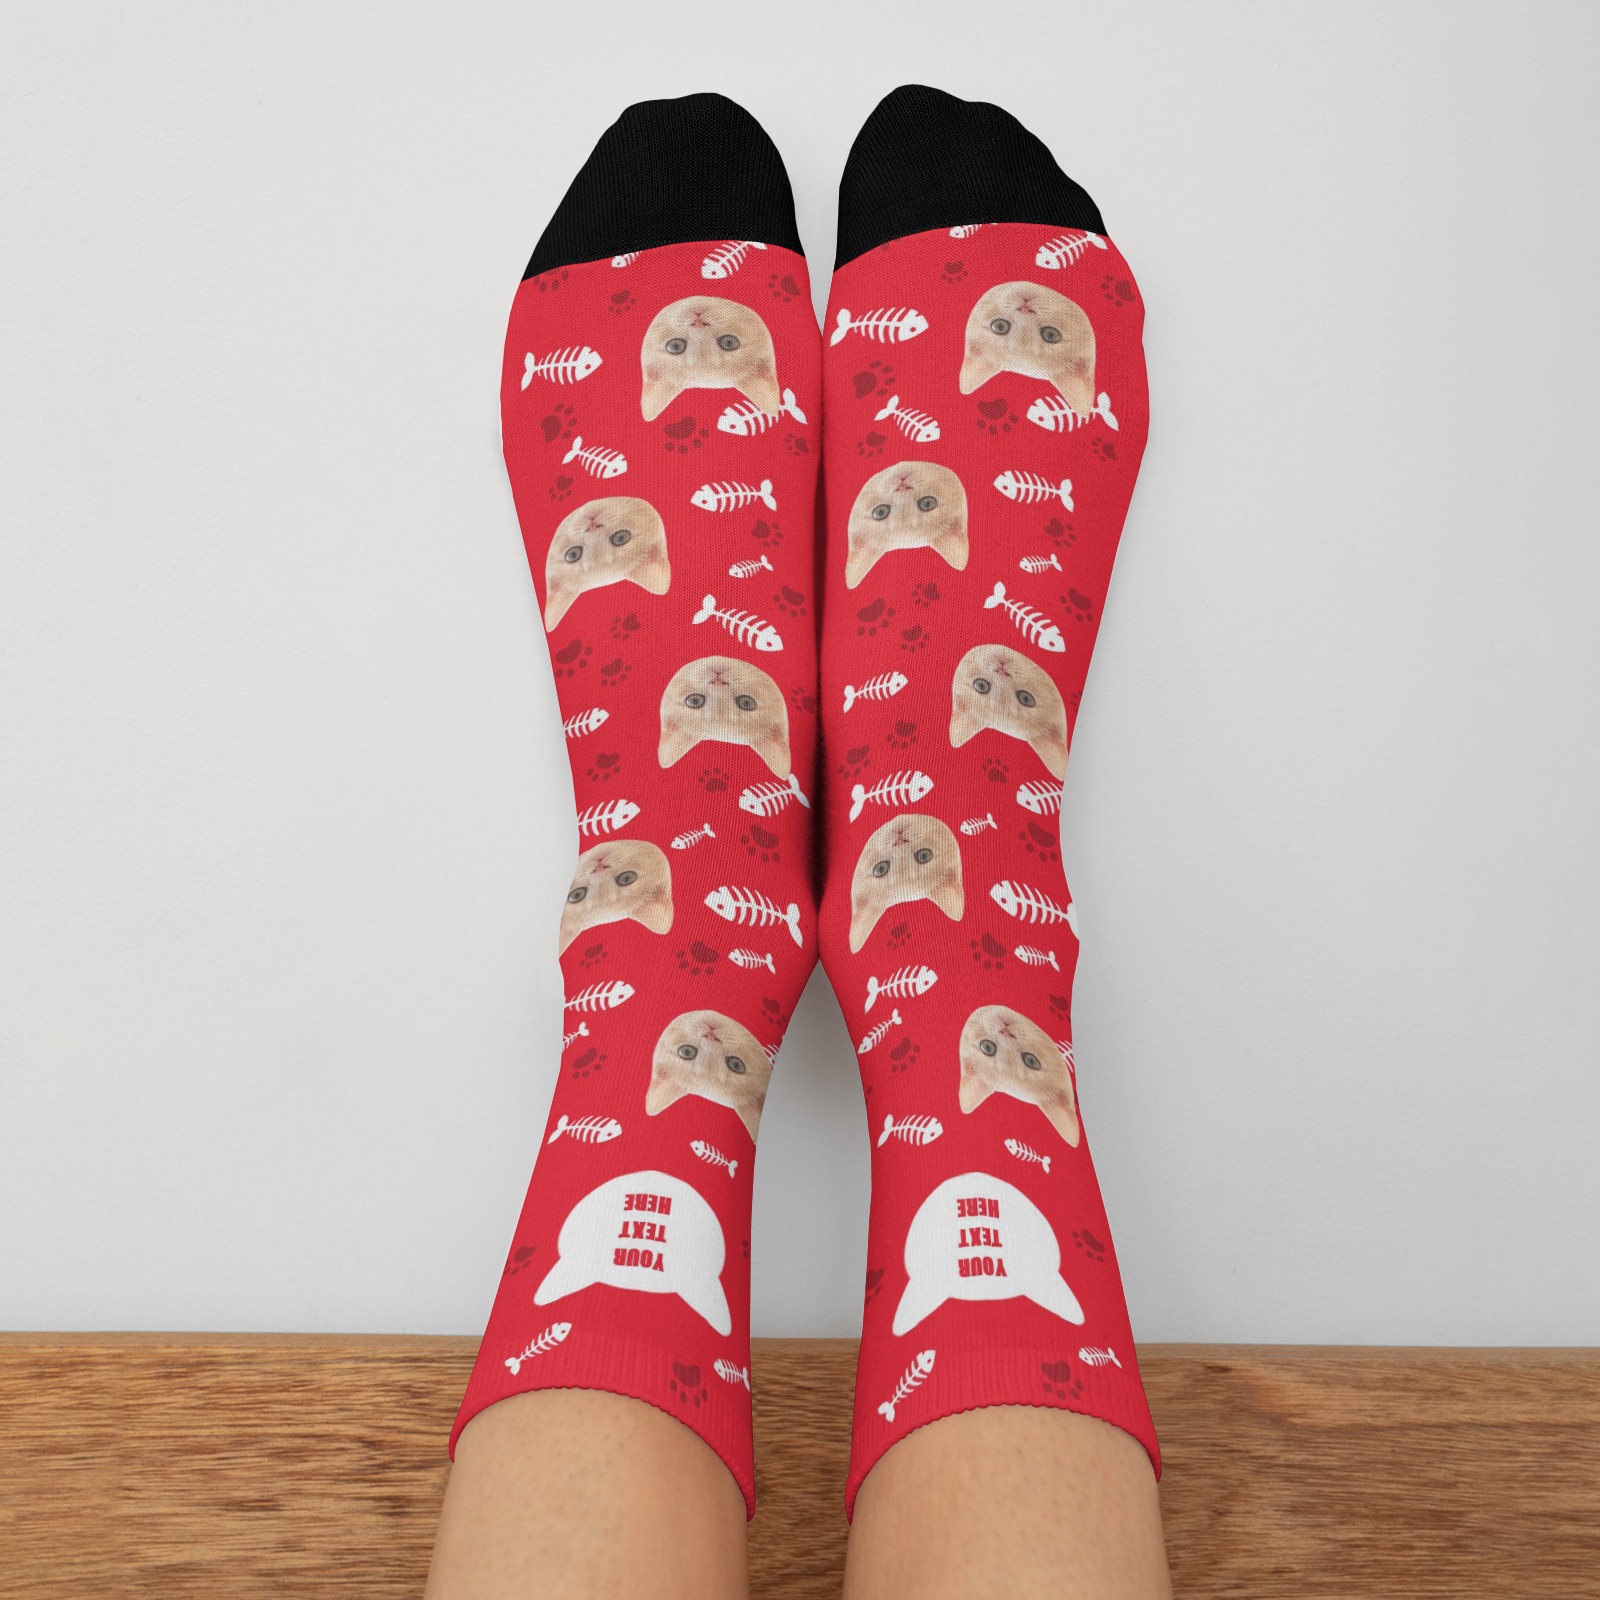 Custom Cat Socks